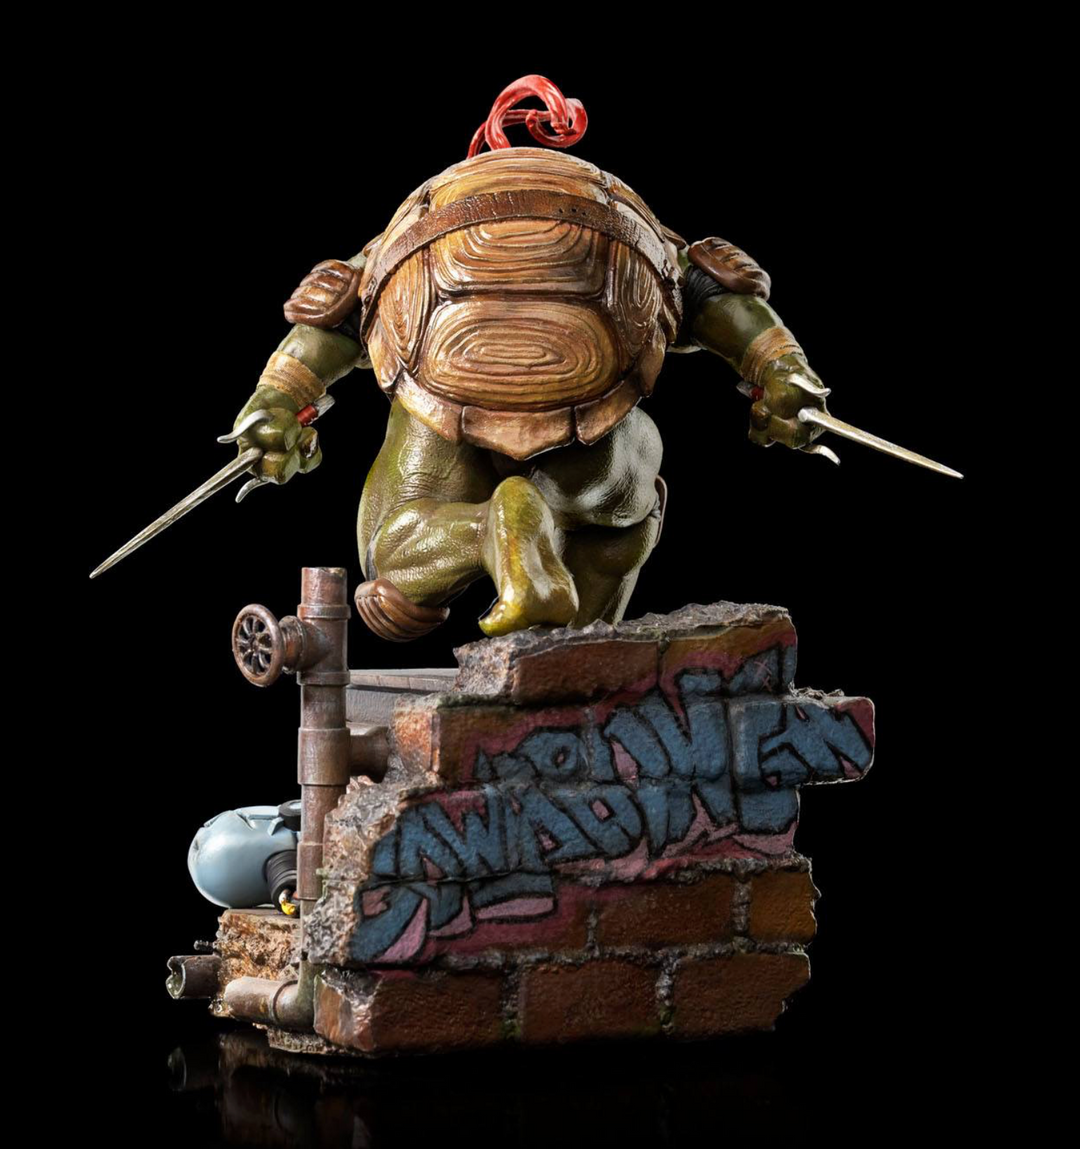 Iron Studios Teenage Mutant Ninja Turtles Battle Diorama Series Raphael 1/10 Art Scale Statue